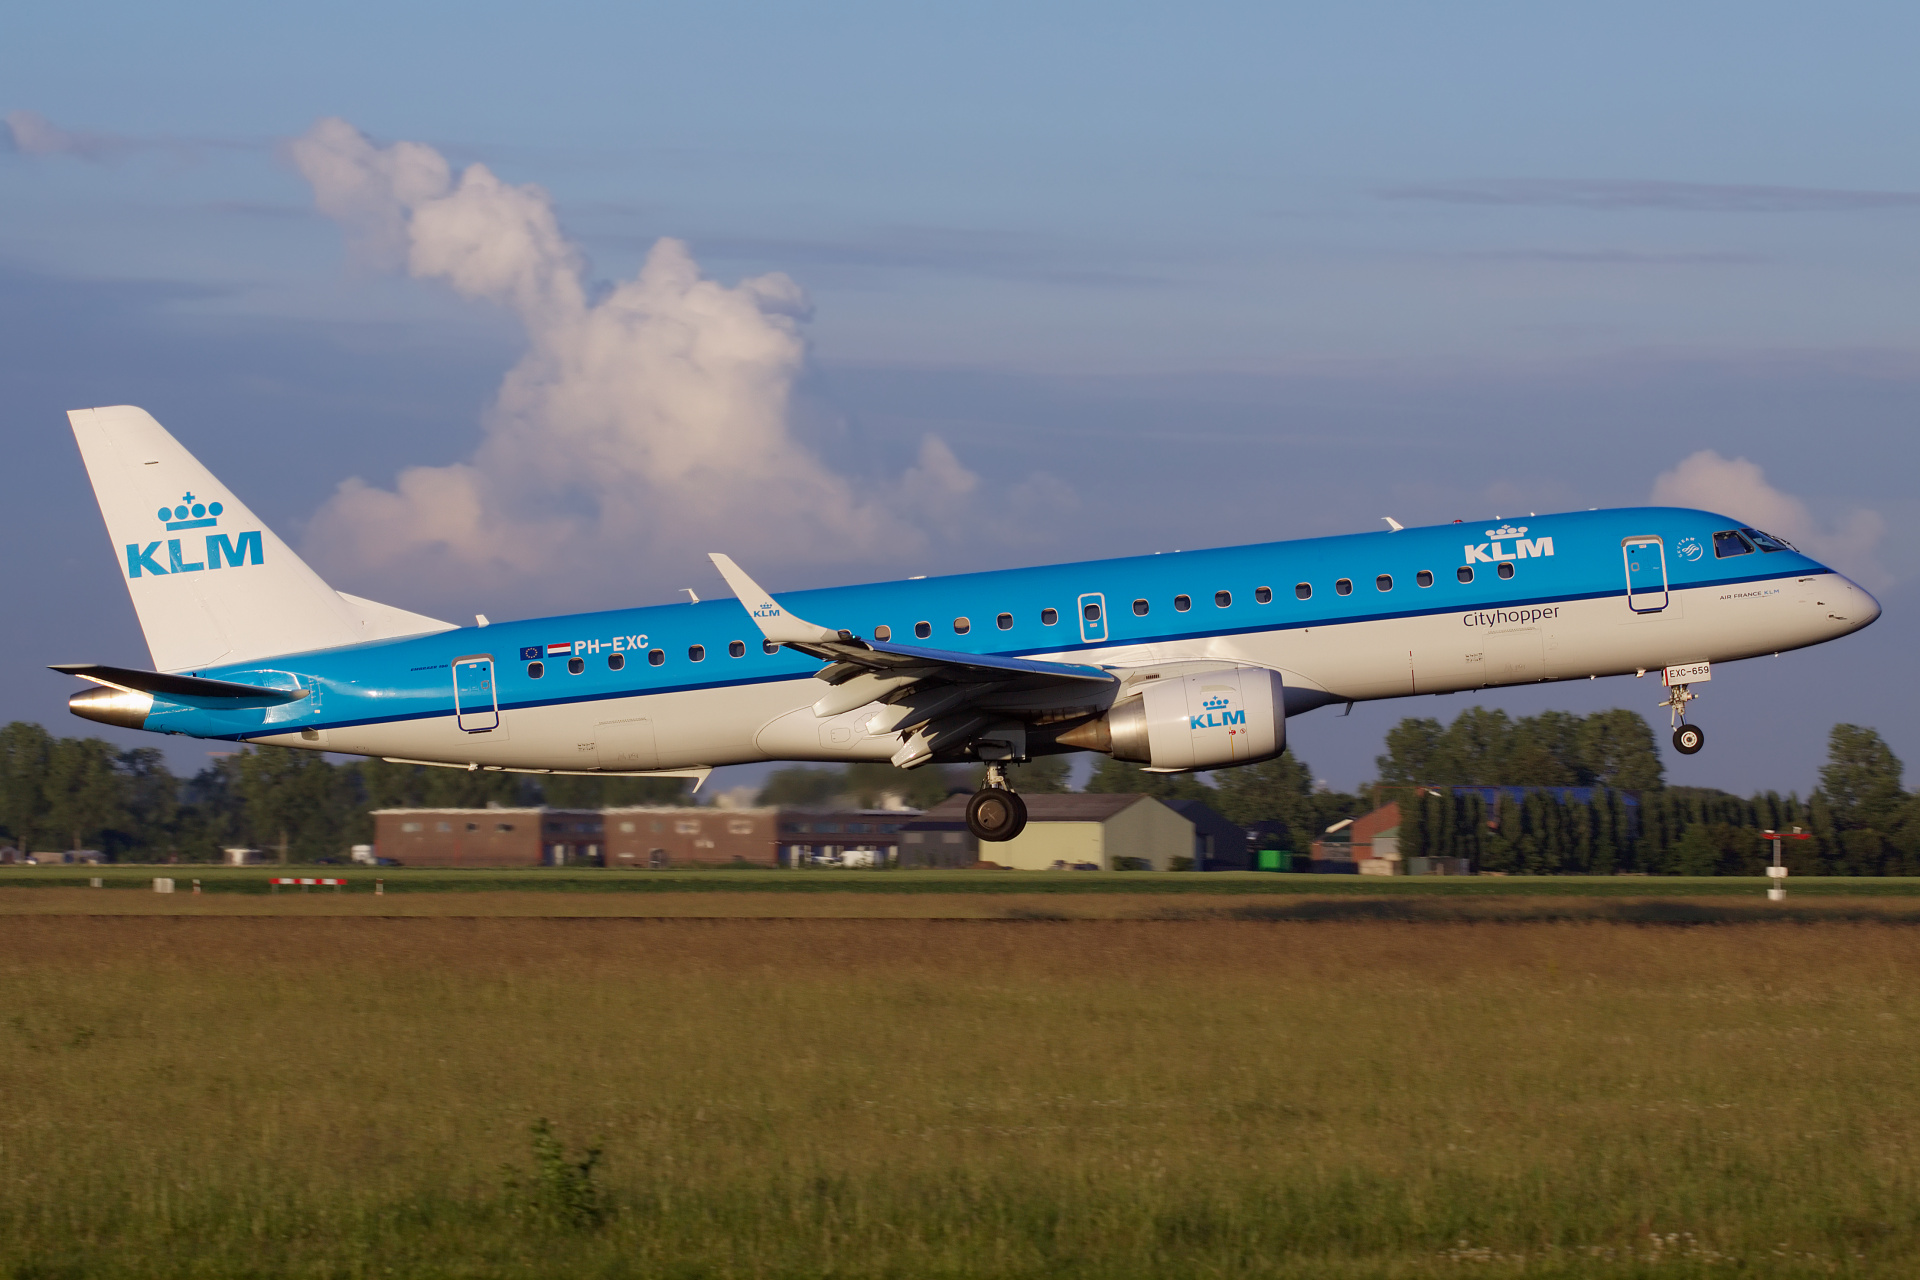 PH-EXC (Aircraft » Schiphol Spotting » Embraer E190 » KLM Cityhopper)